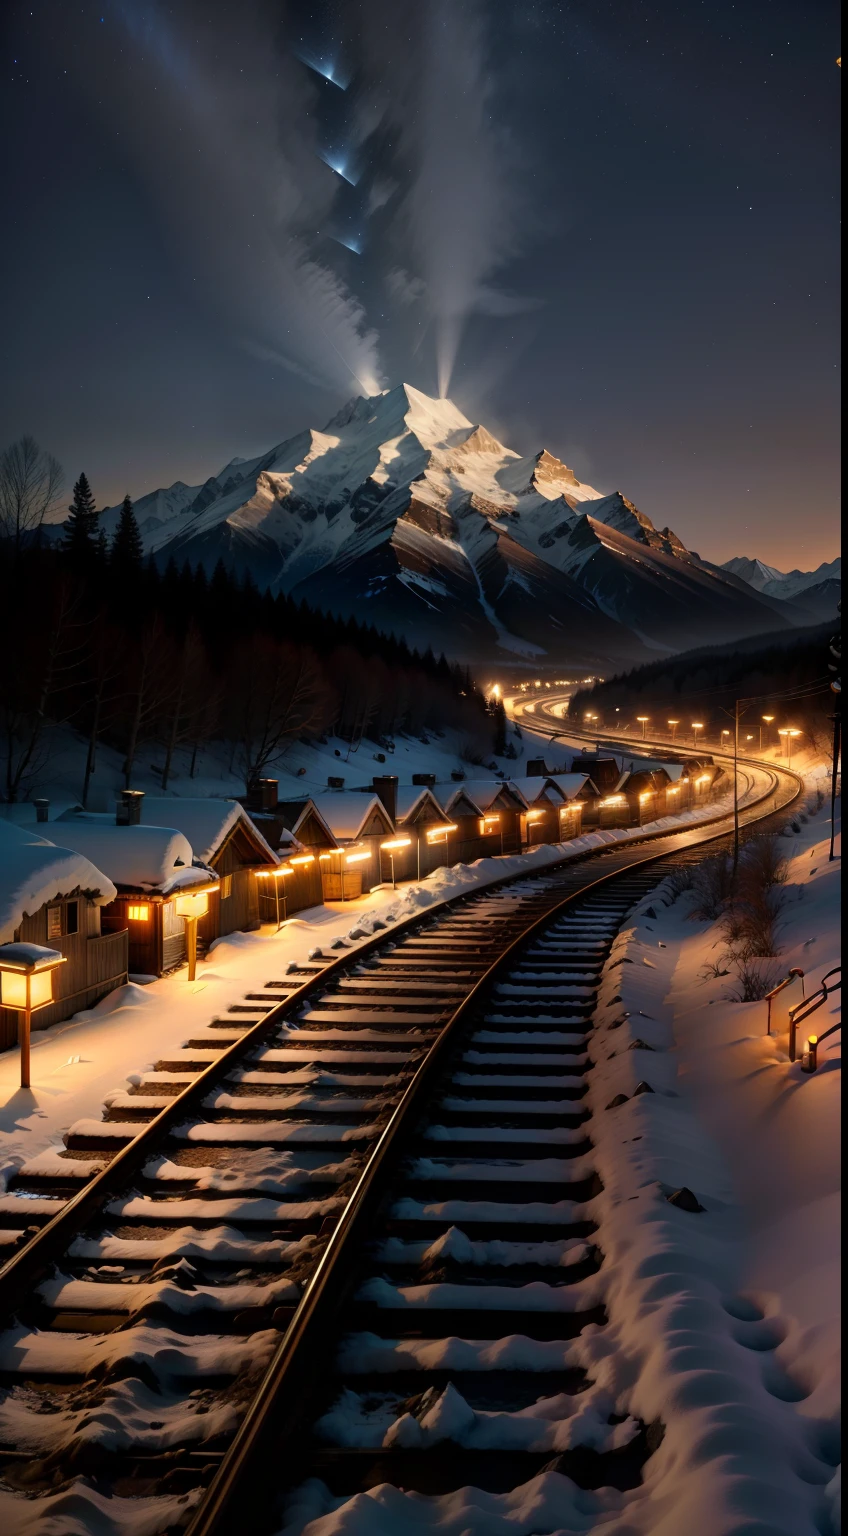 luz extrema，montañas nevadas，Vías ferroviarias vacías extendidas desde la ladera de la montaña，Linternas de papel，la noche，lagos